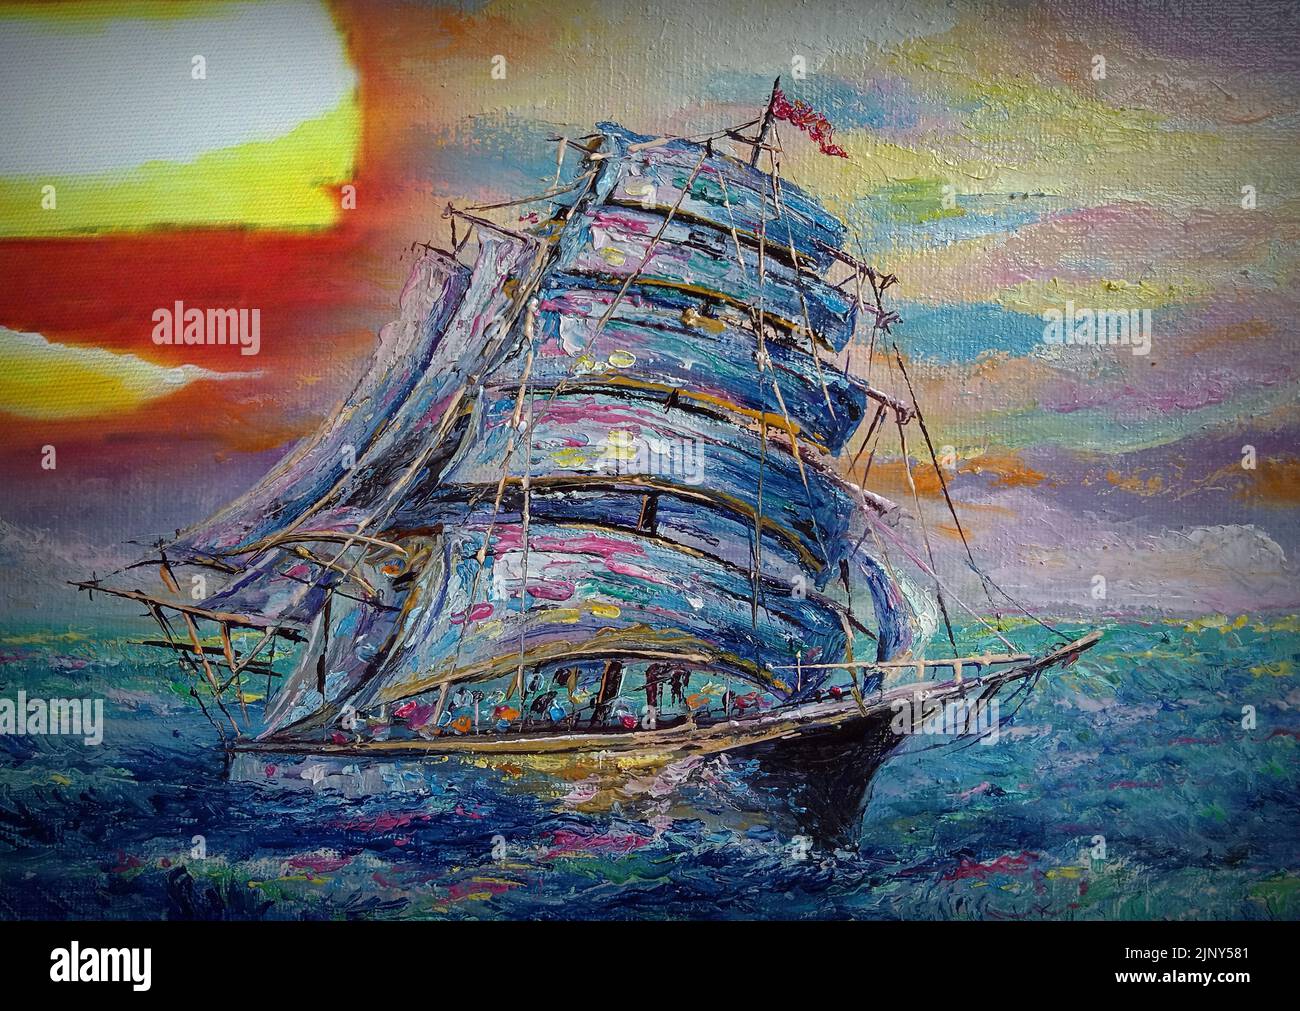 Art peinture huile couleur voilier , barque chanceux Banque D'Images